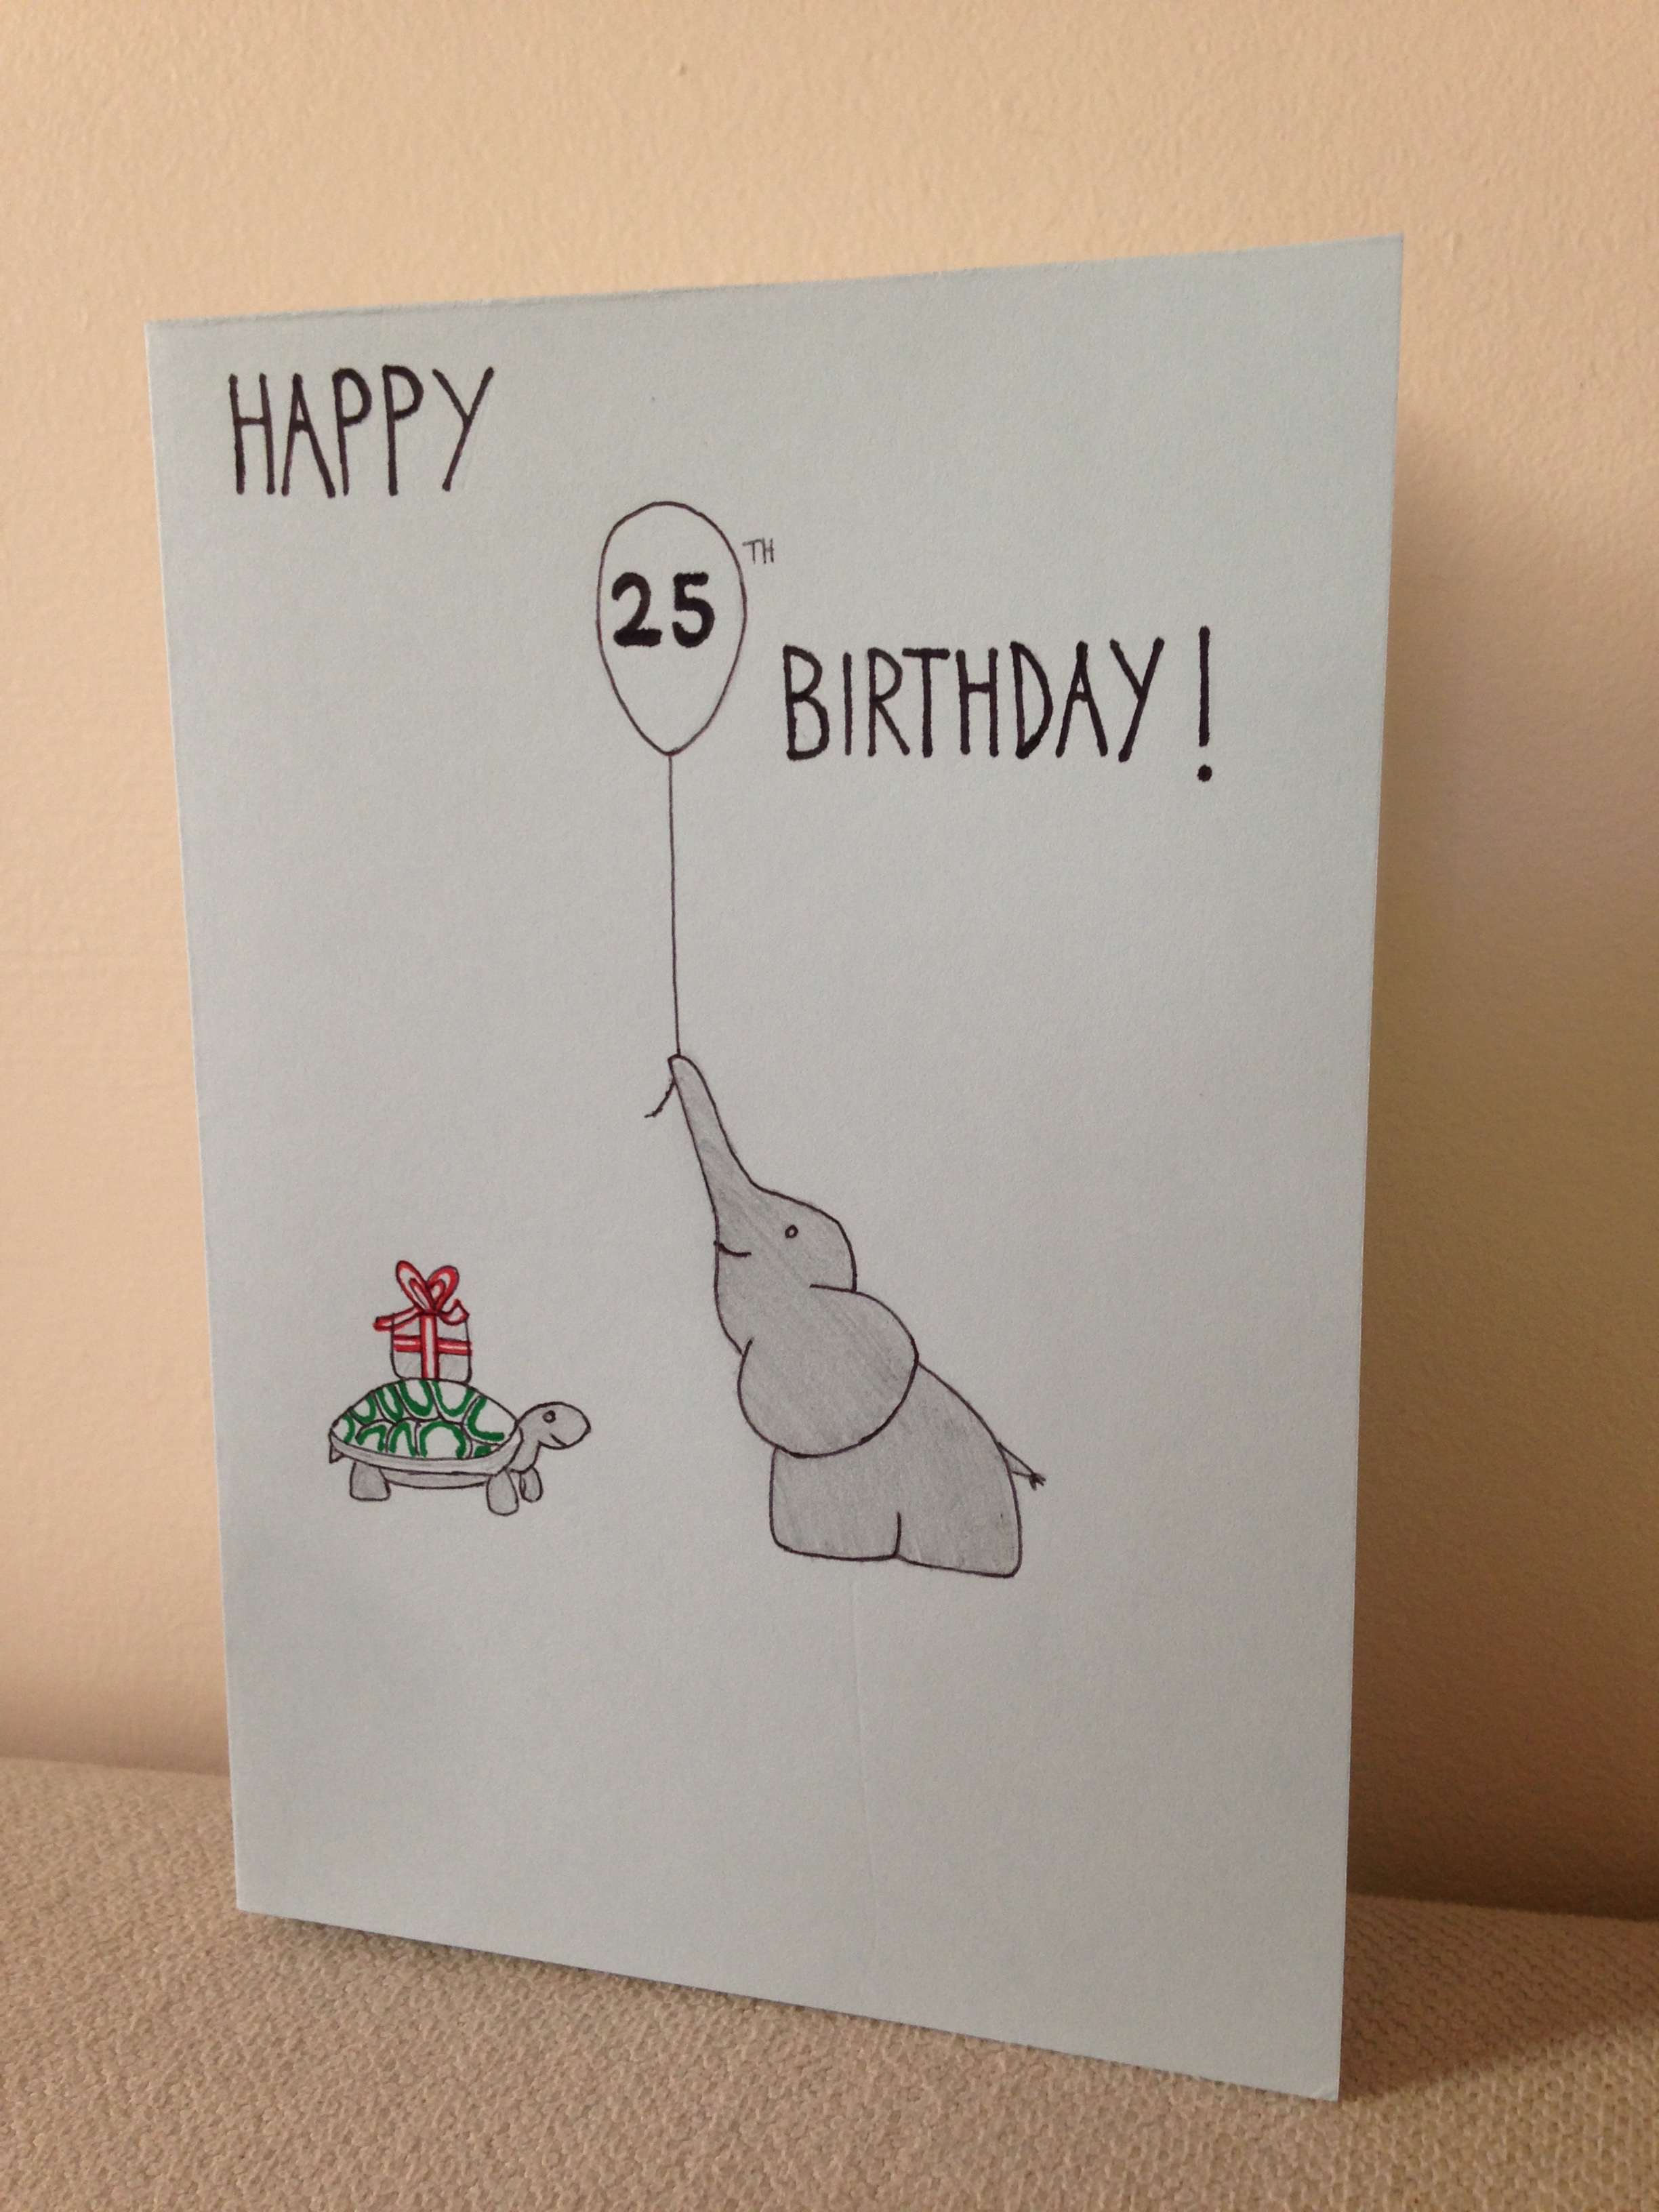 Homemade Birthday Card Ideas A Simple Birthday Card Craftycannblog